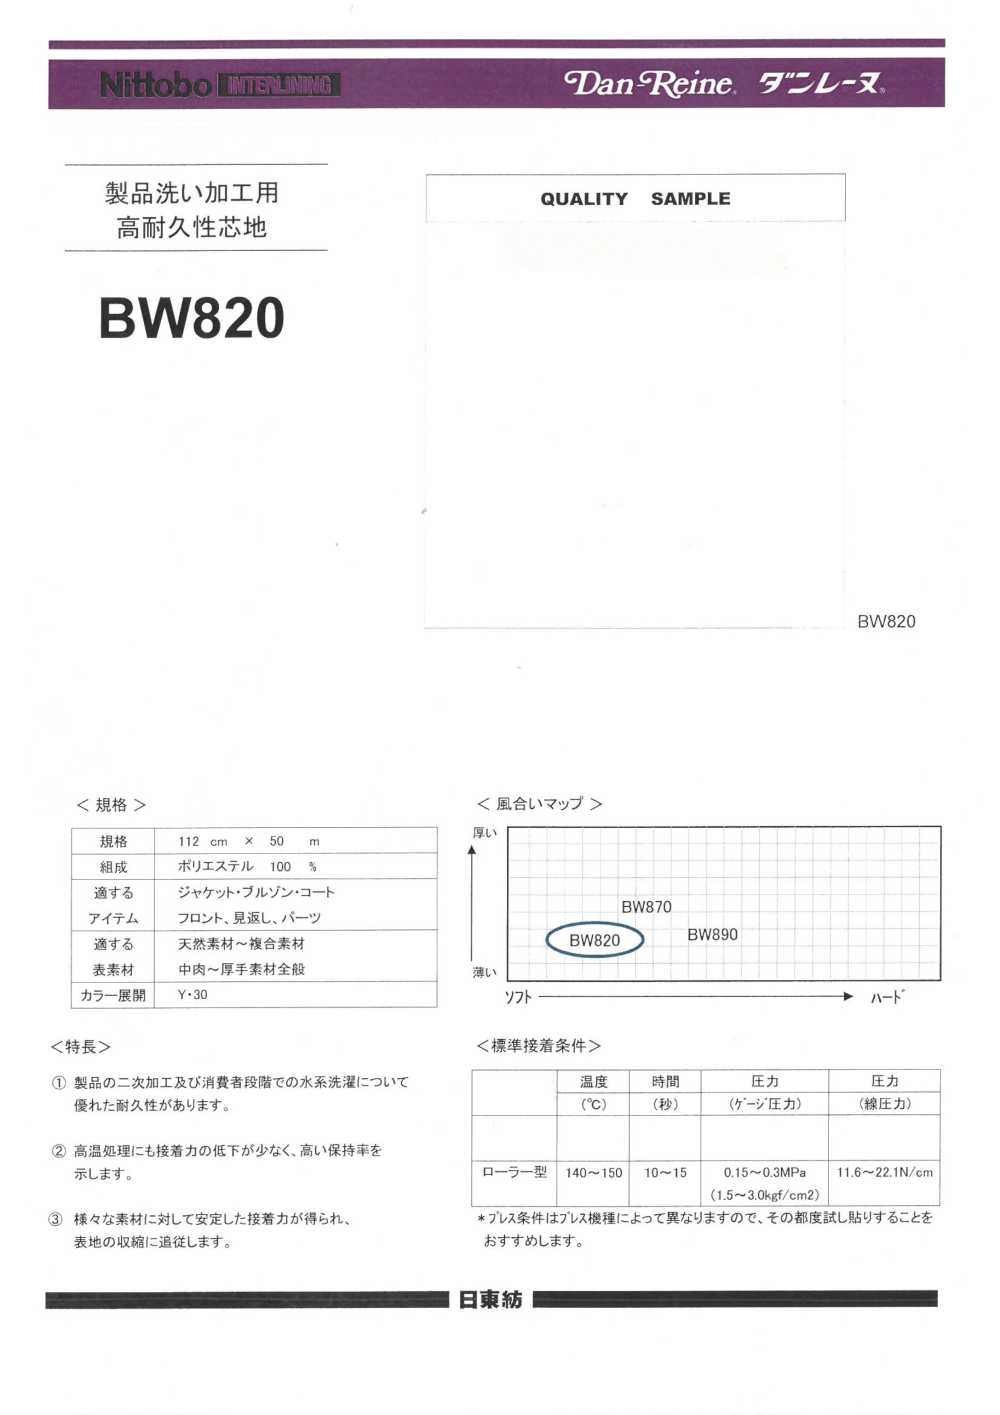 BW820 产品水洗加工/水洗耐用衬布（30D） 日东纺绩